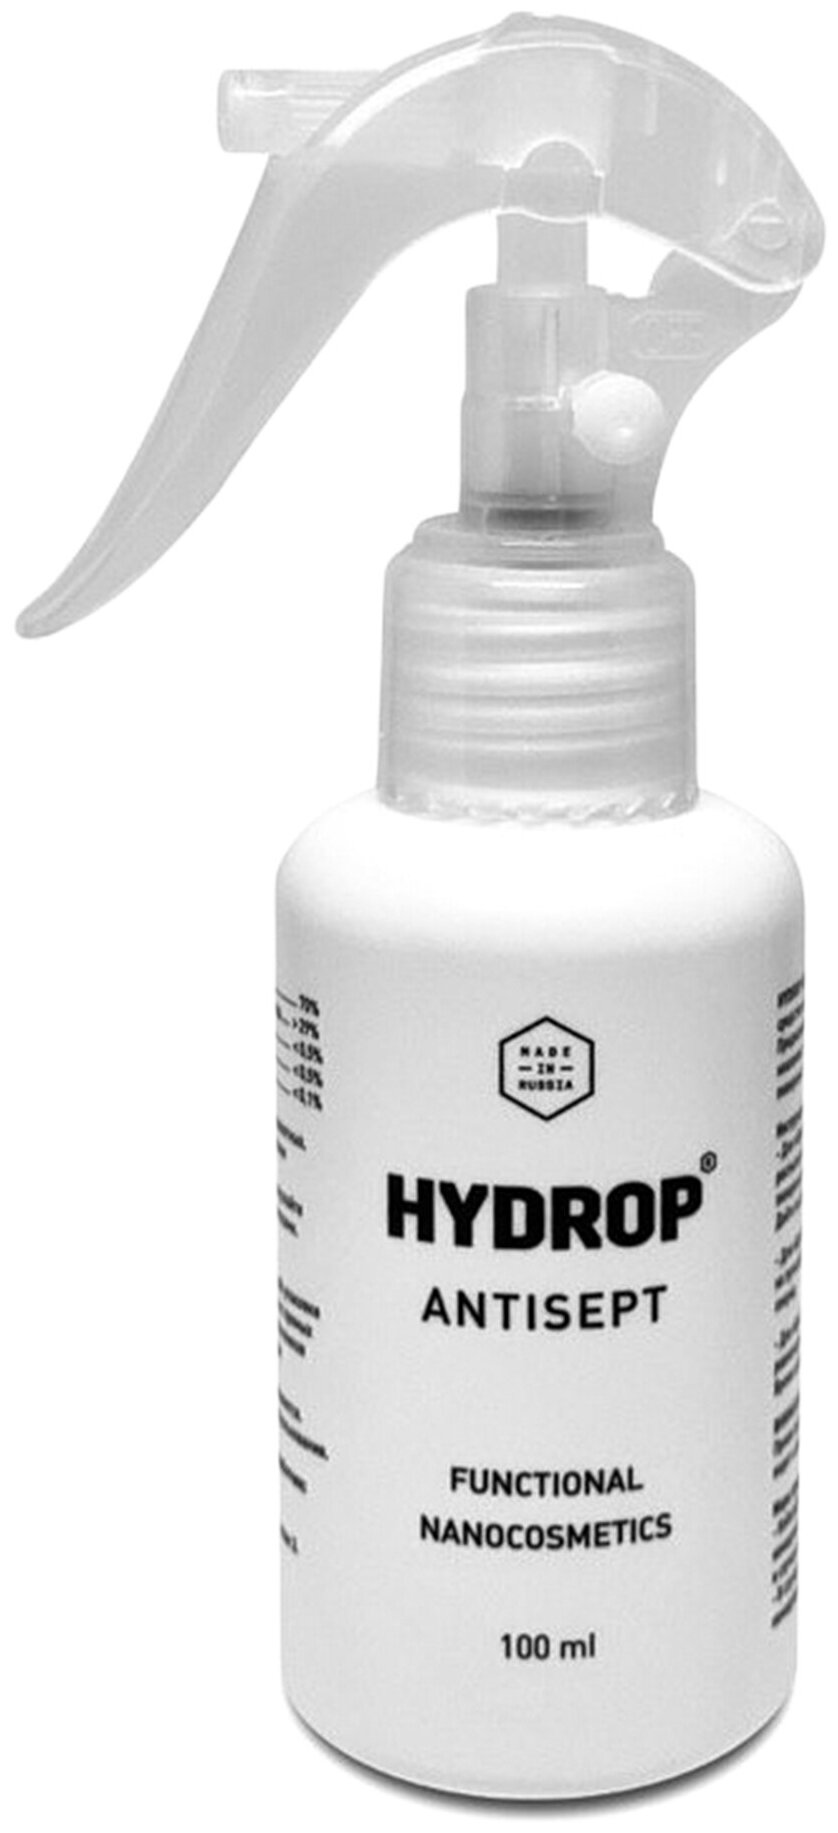 HYDROP Антибактериальное средство для обработки маски, рук и поверхностей Antisept, 100 мл, 100 г, тип крышки: триггер, цитрусовый